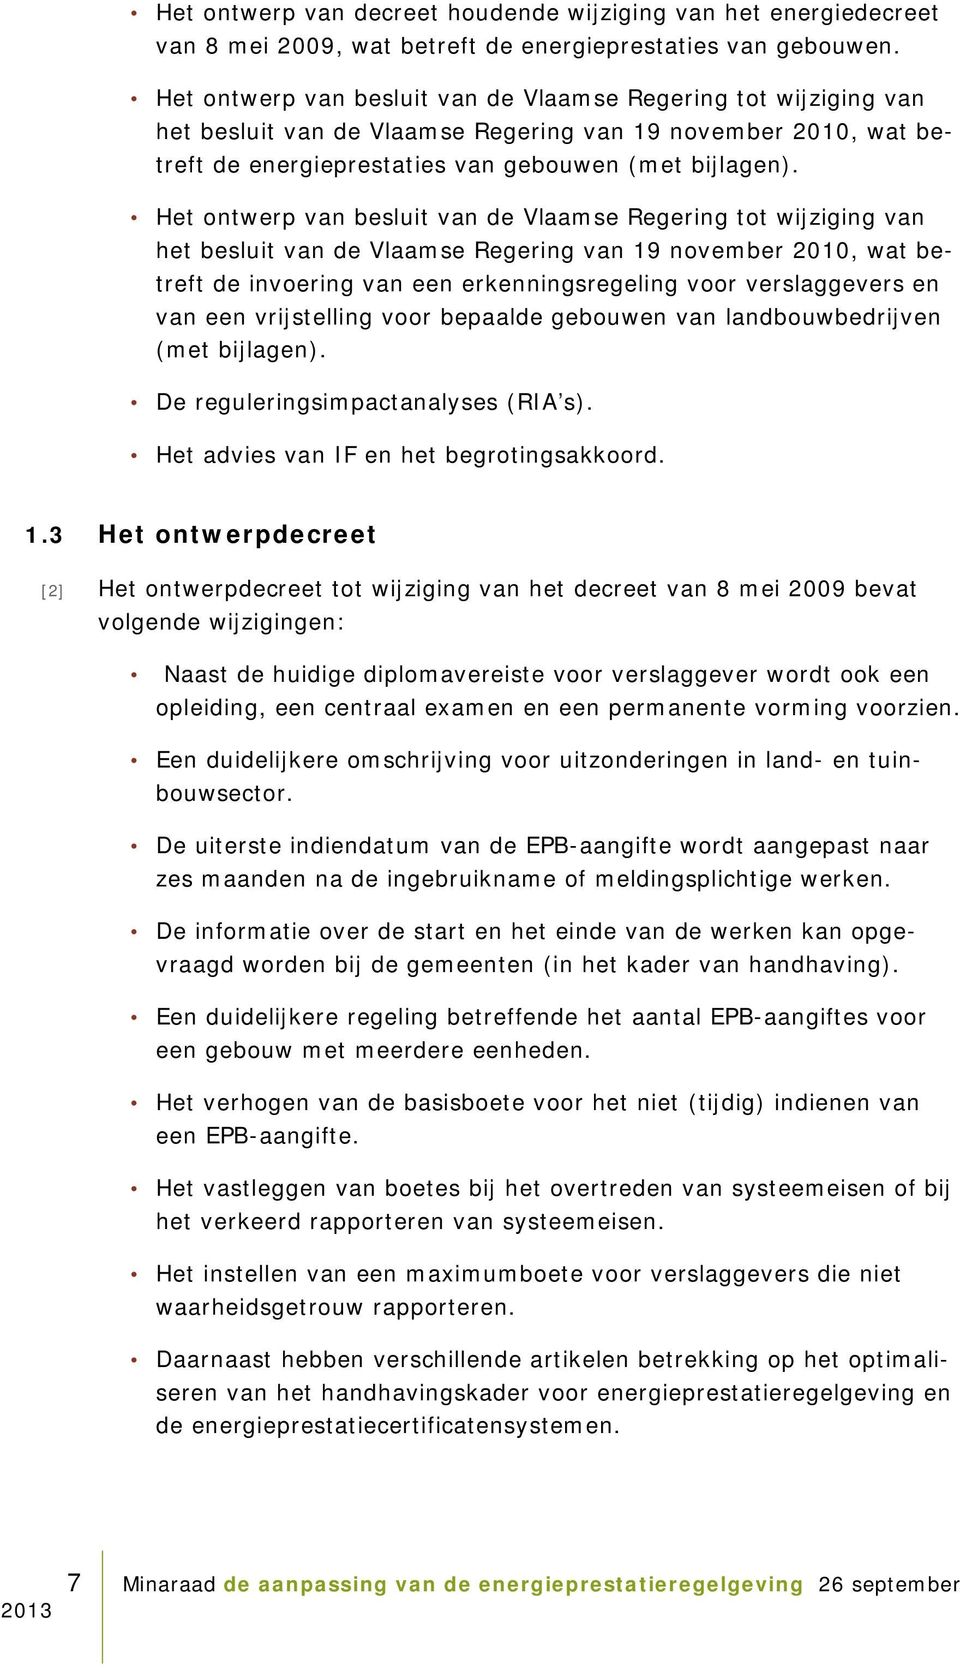 Het ontwerp van besluit van de Vlaamse Regering tot wijziging van het besluit van de Vlaamse Regering van 19 november 2010, wat betreft de invoering van een erkenningsregeling voor verslaggevers en